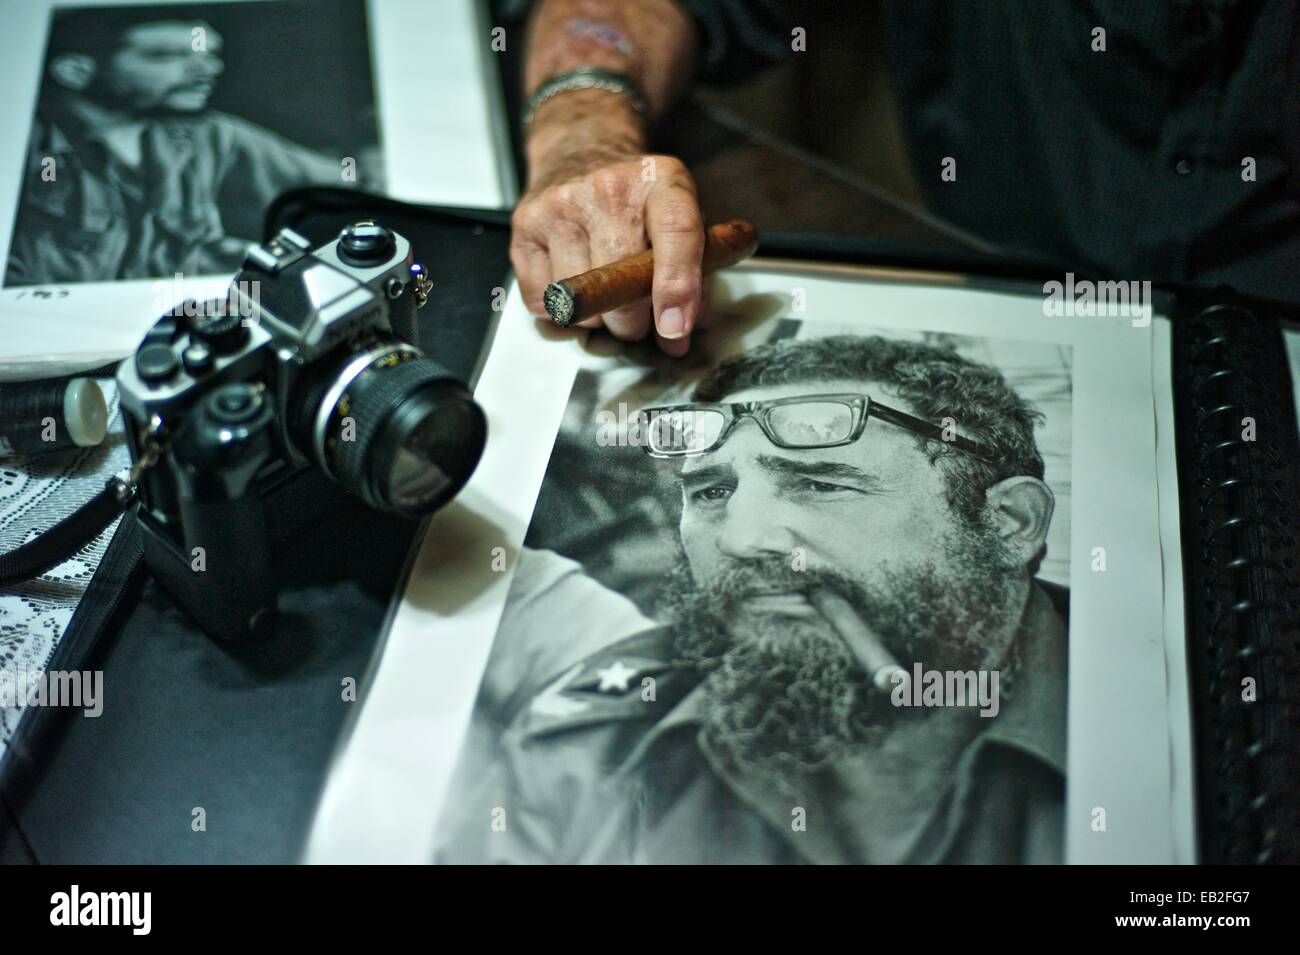 Fotografo cubano Liborio Noval, nato nel 1936, e uno dei più iconica fotografo della Rivoluzione cubana, con una foto di Fidel Castro. Noval morì nel 2012. Foto Stock